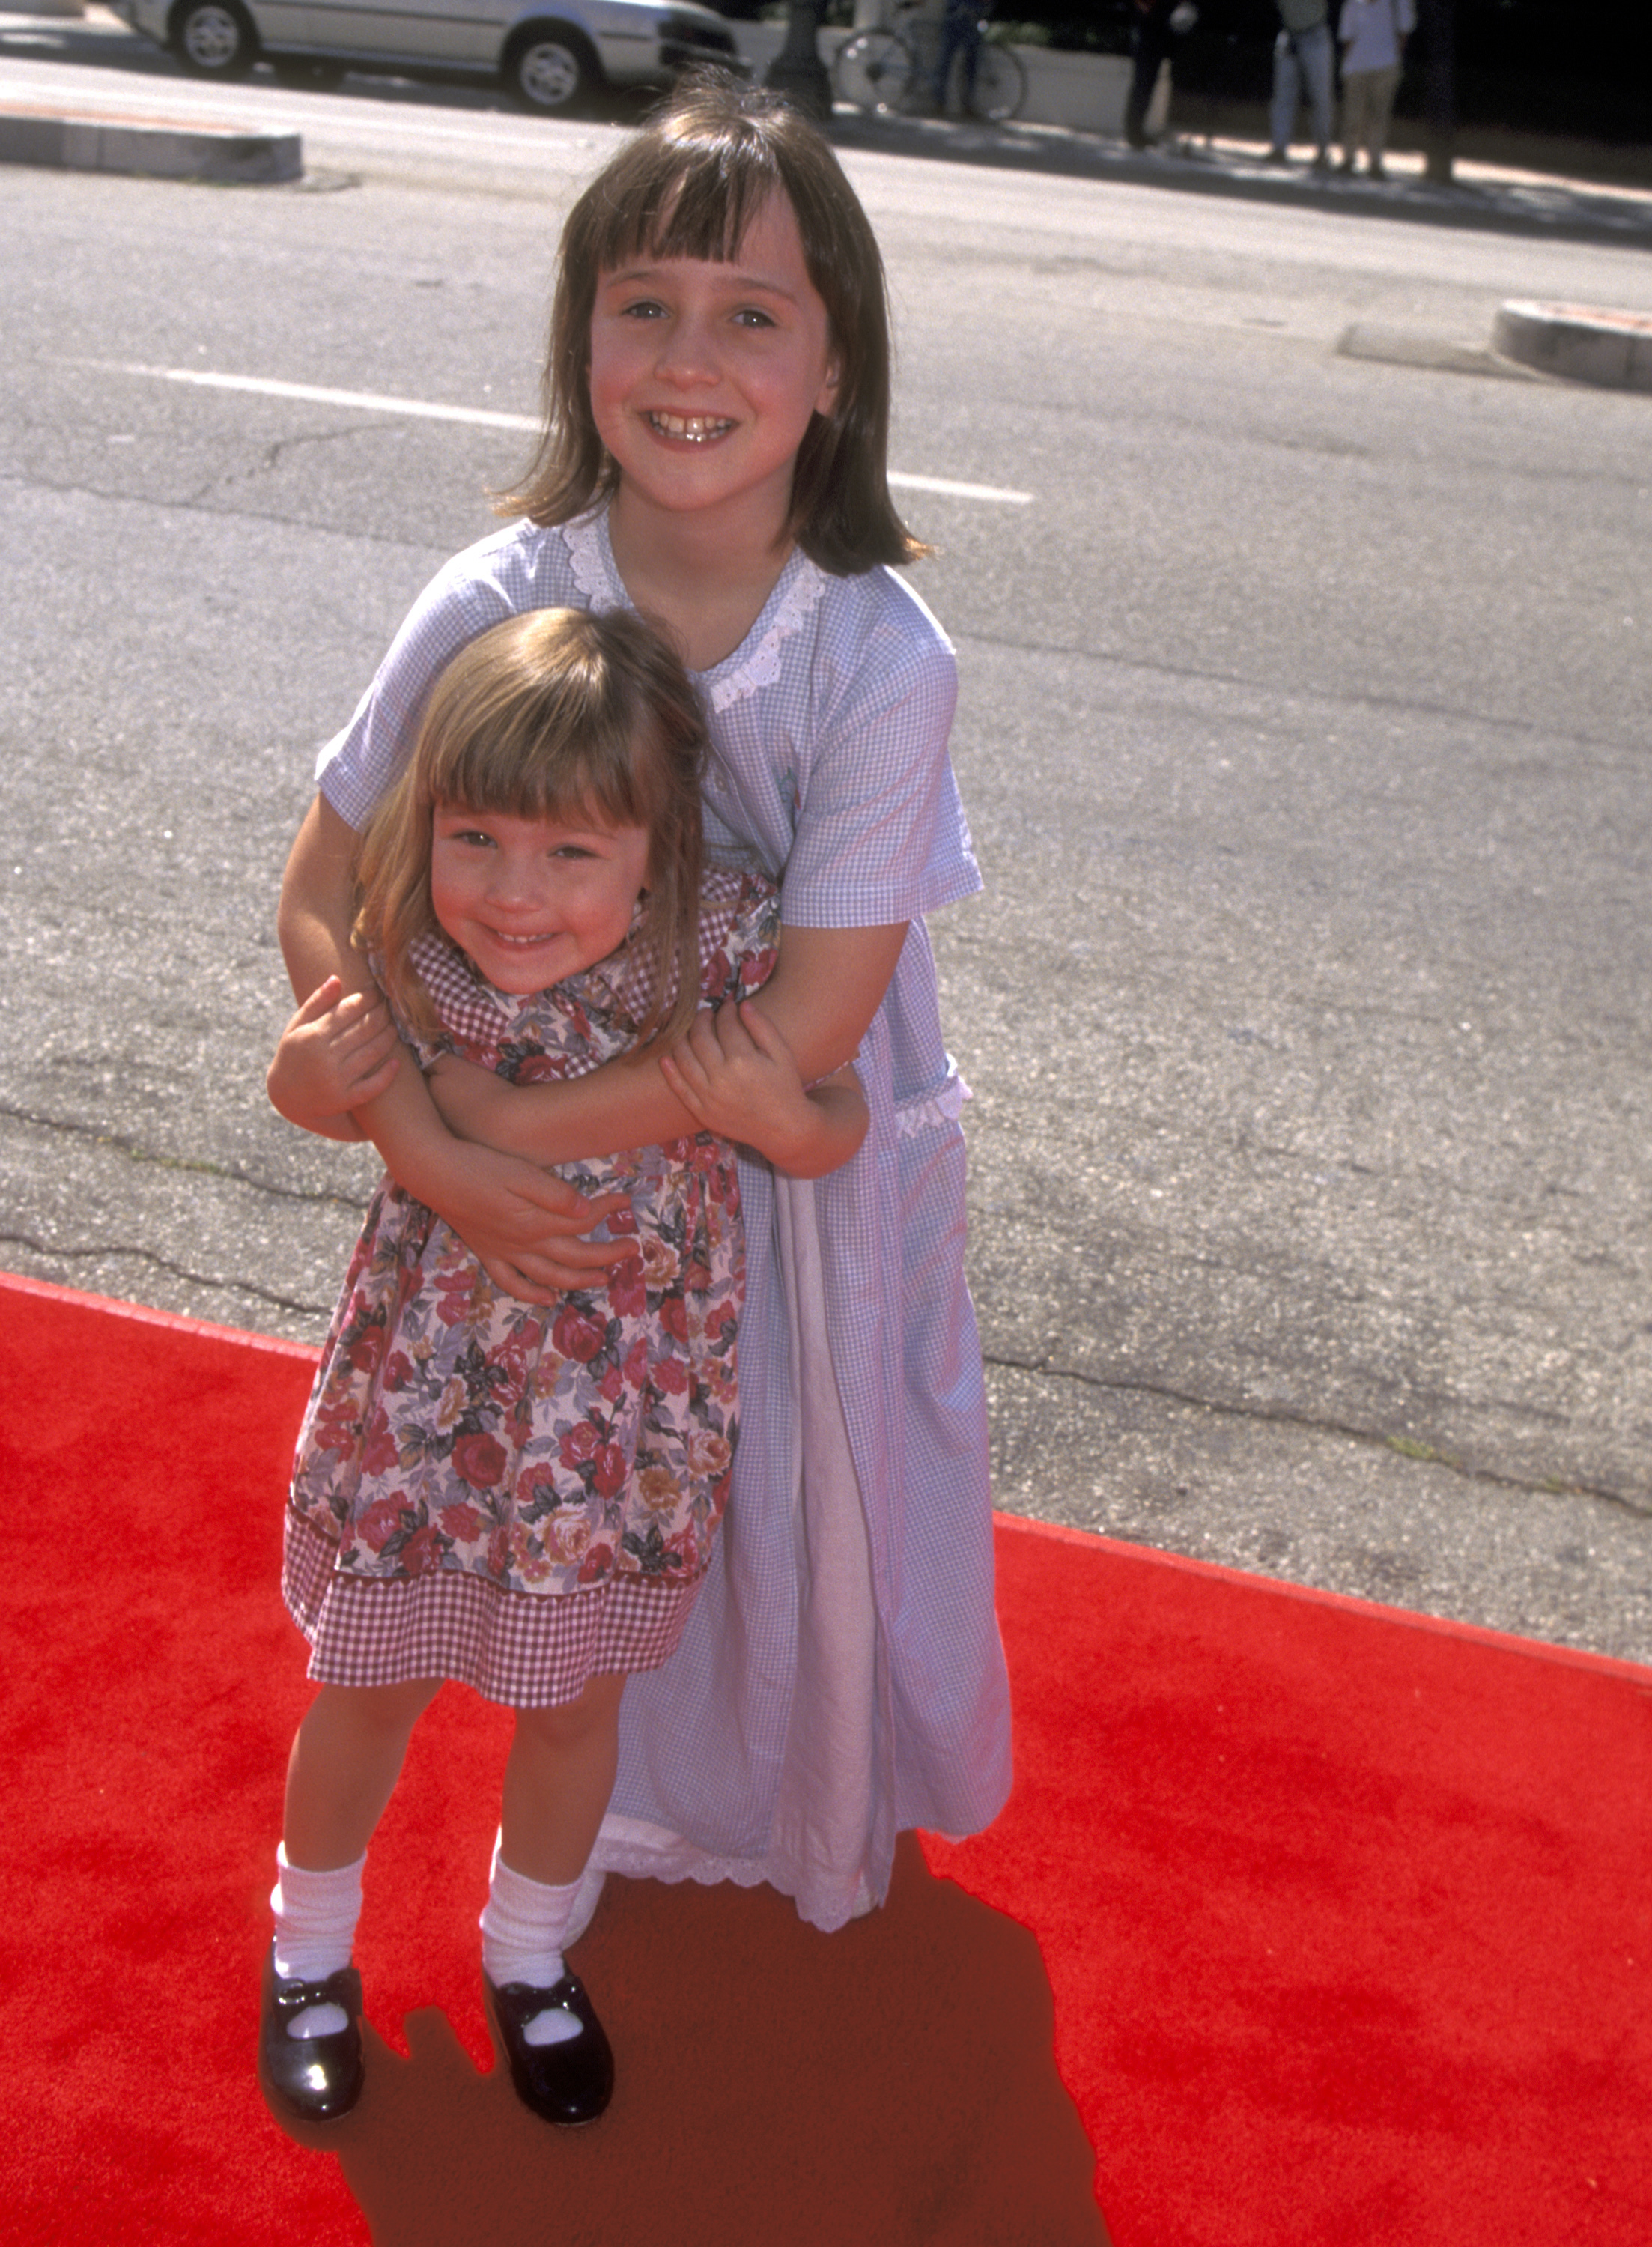 Mara Wilson con su hermana pequeña, Anna, asisten al estreno de "Matilda" en Culver City el 28 de julio de 1996 en Culver City, California | Foto: Getty Images